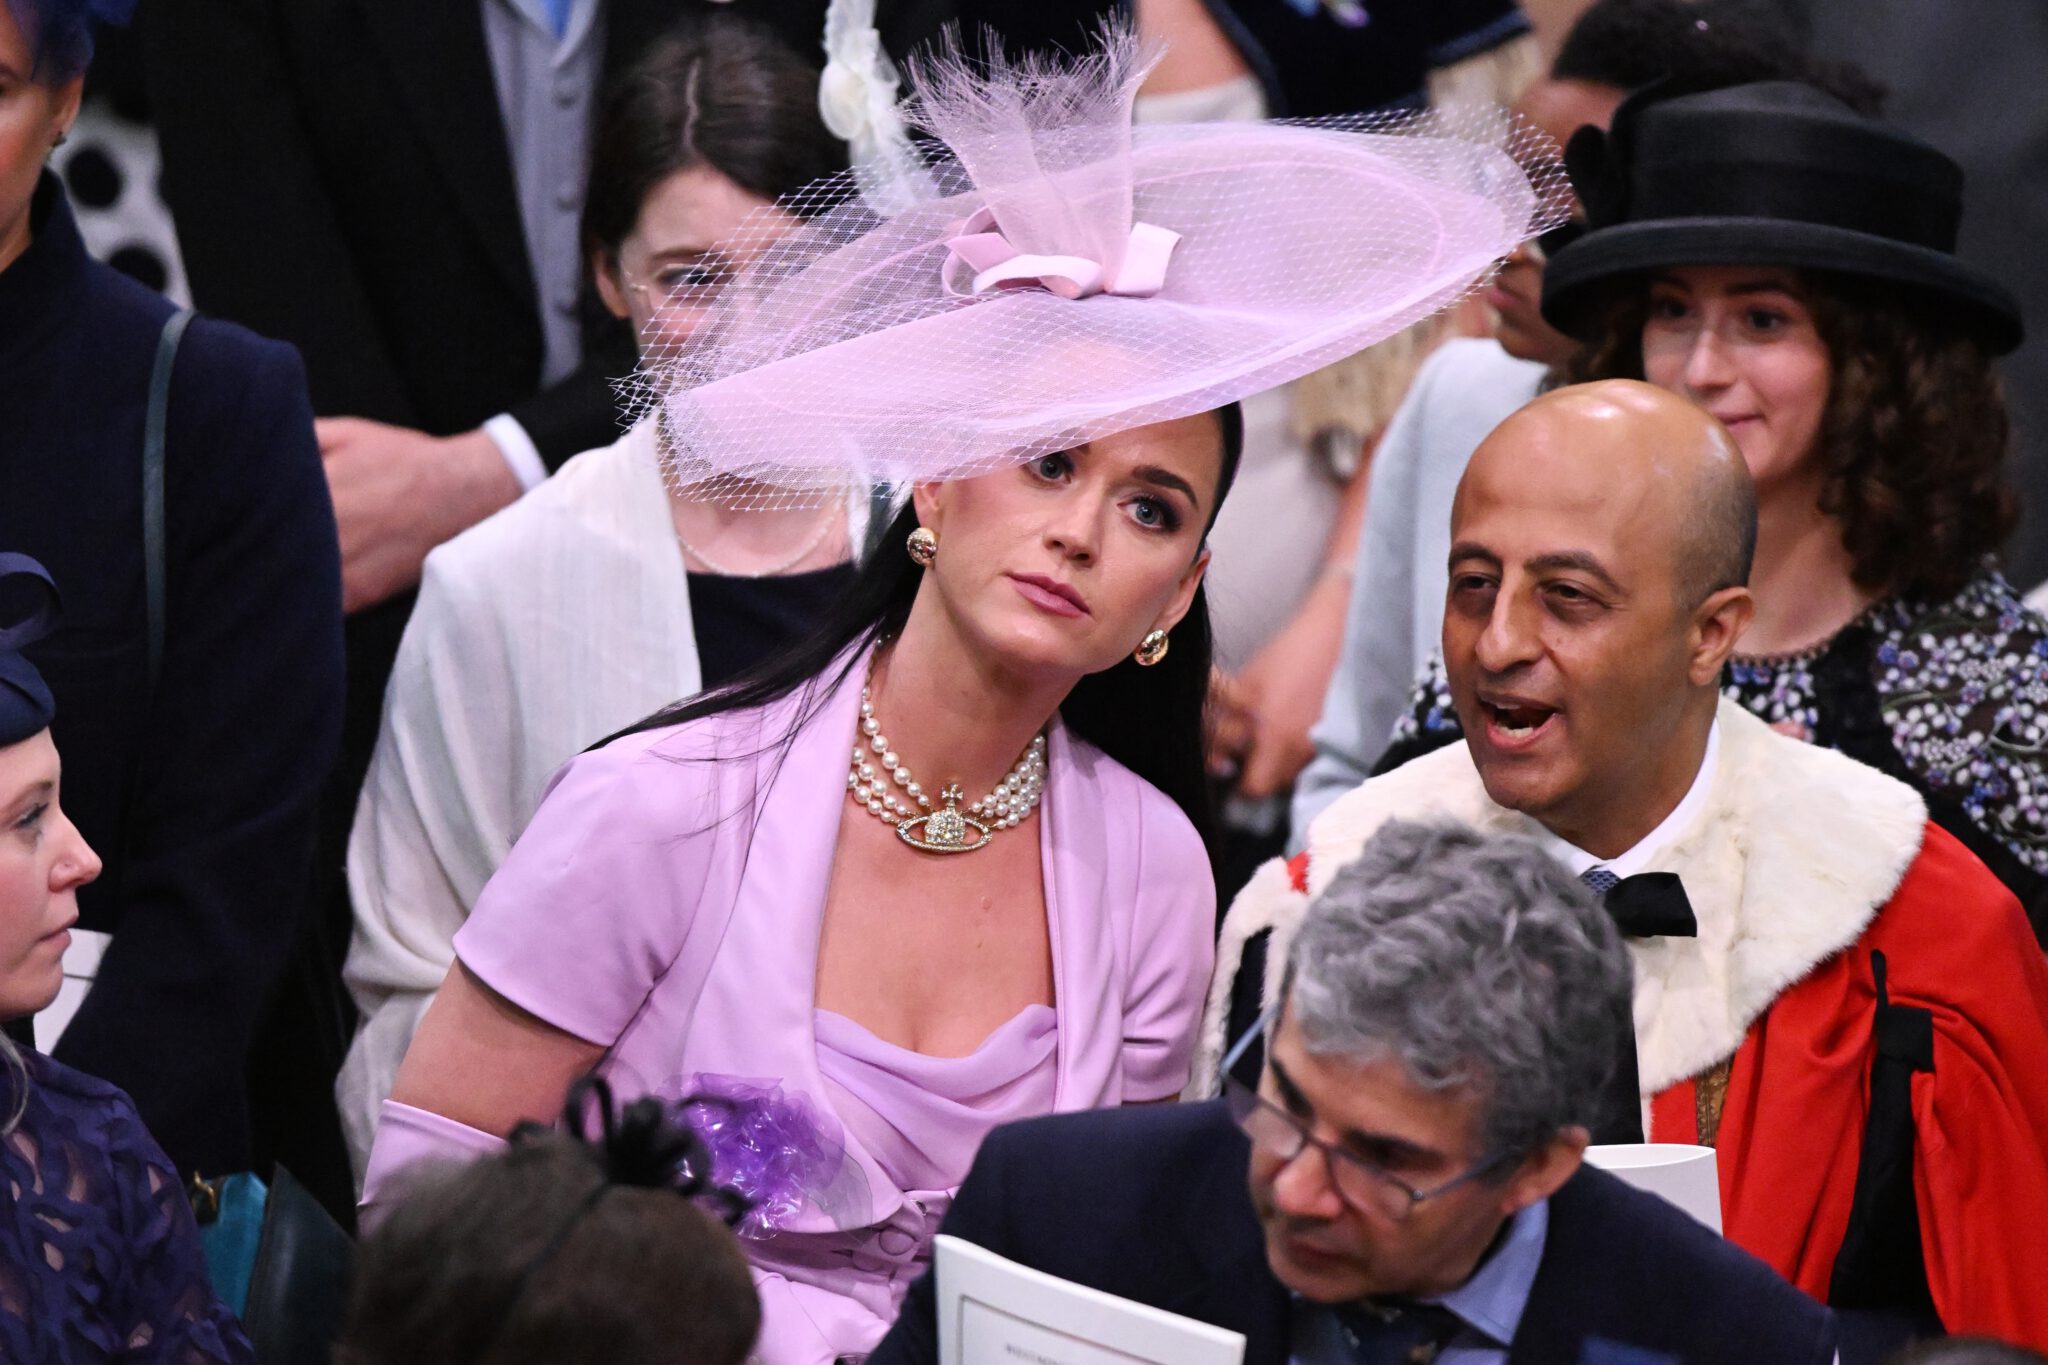 Katy Perry reageert op viral video kroning Prince Charles